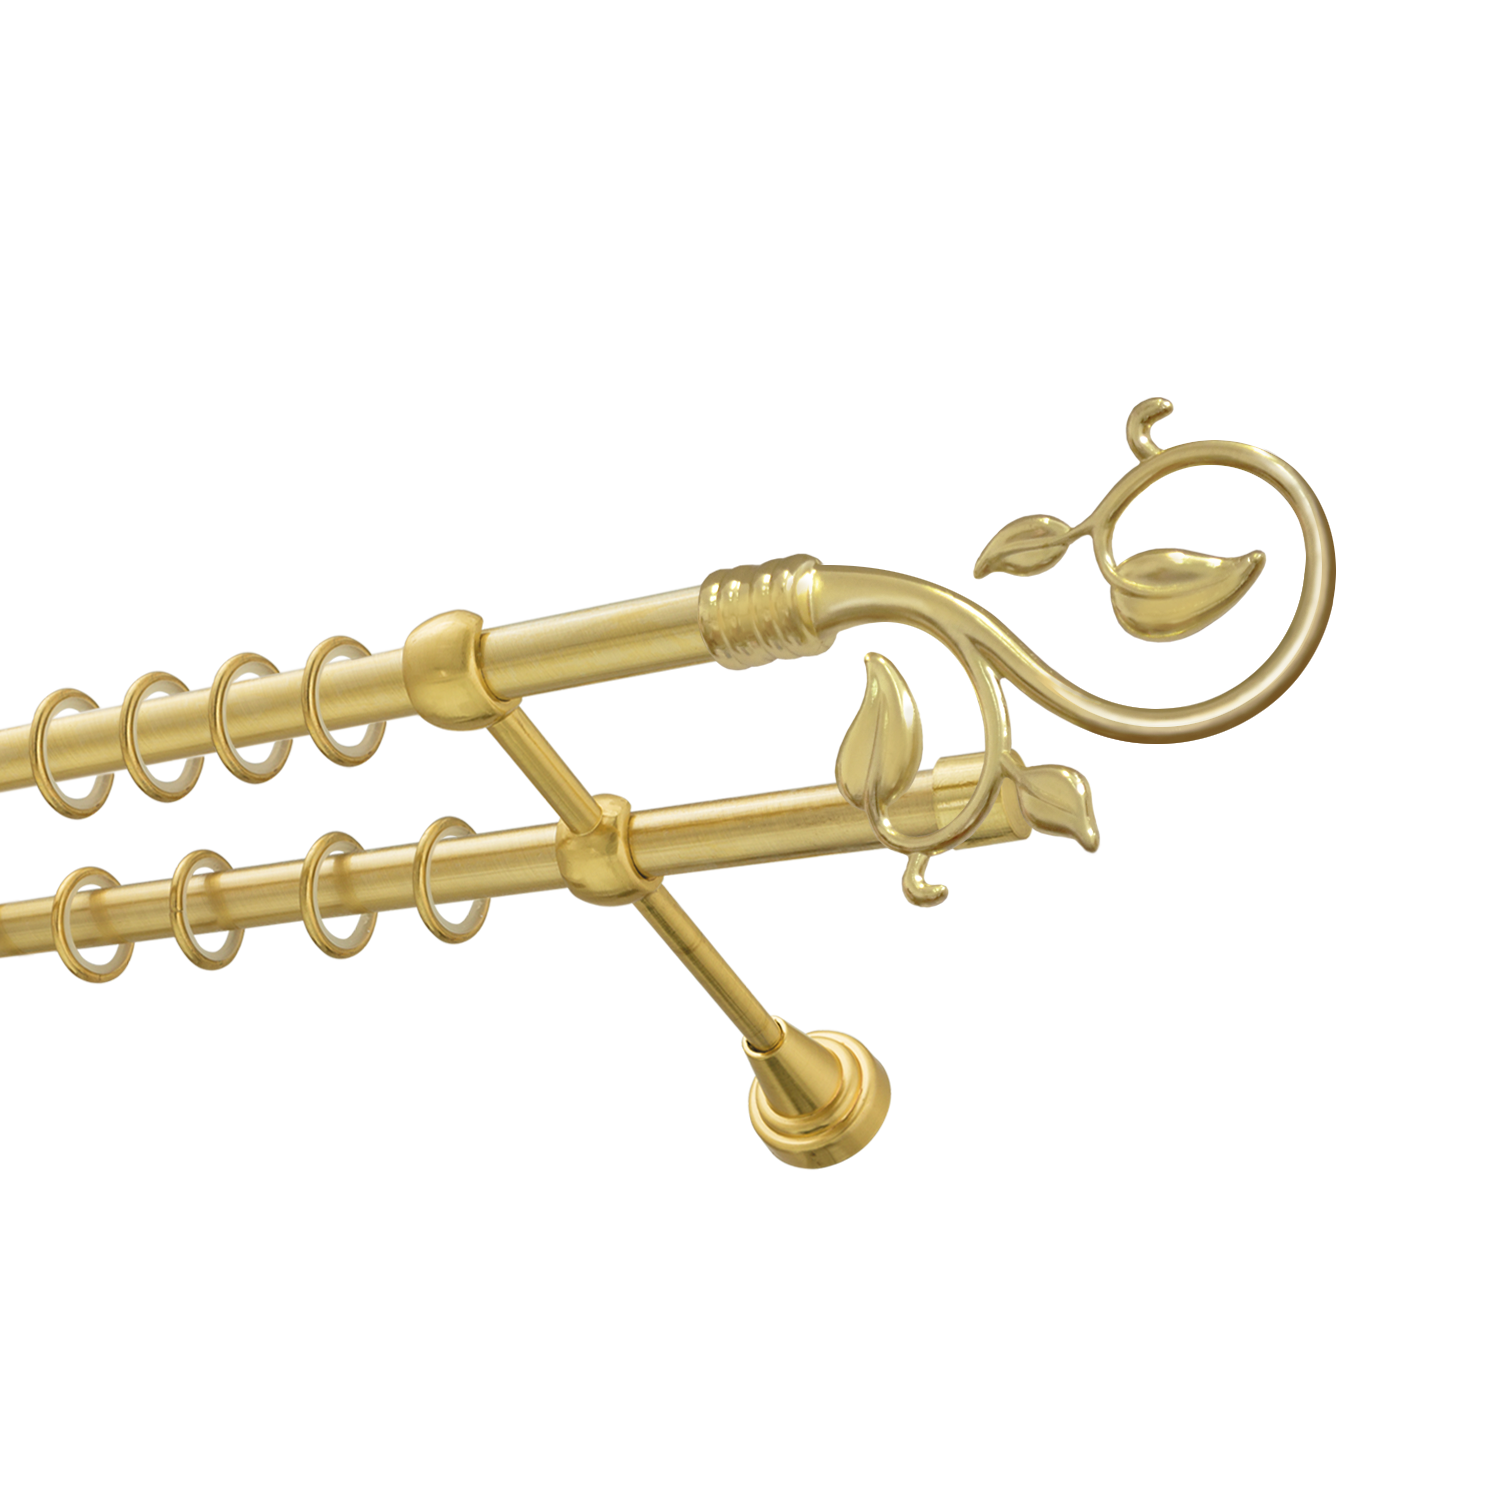 Металлический карниз для штор Амели, двухрядный 16/16 мм, золото, гладкая штанга, длина 240 см - фото Wikidecor.ru